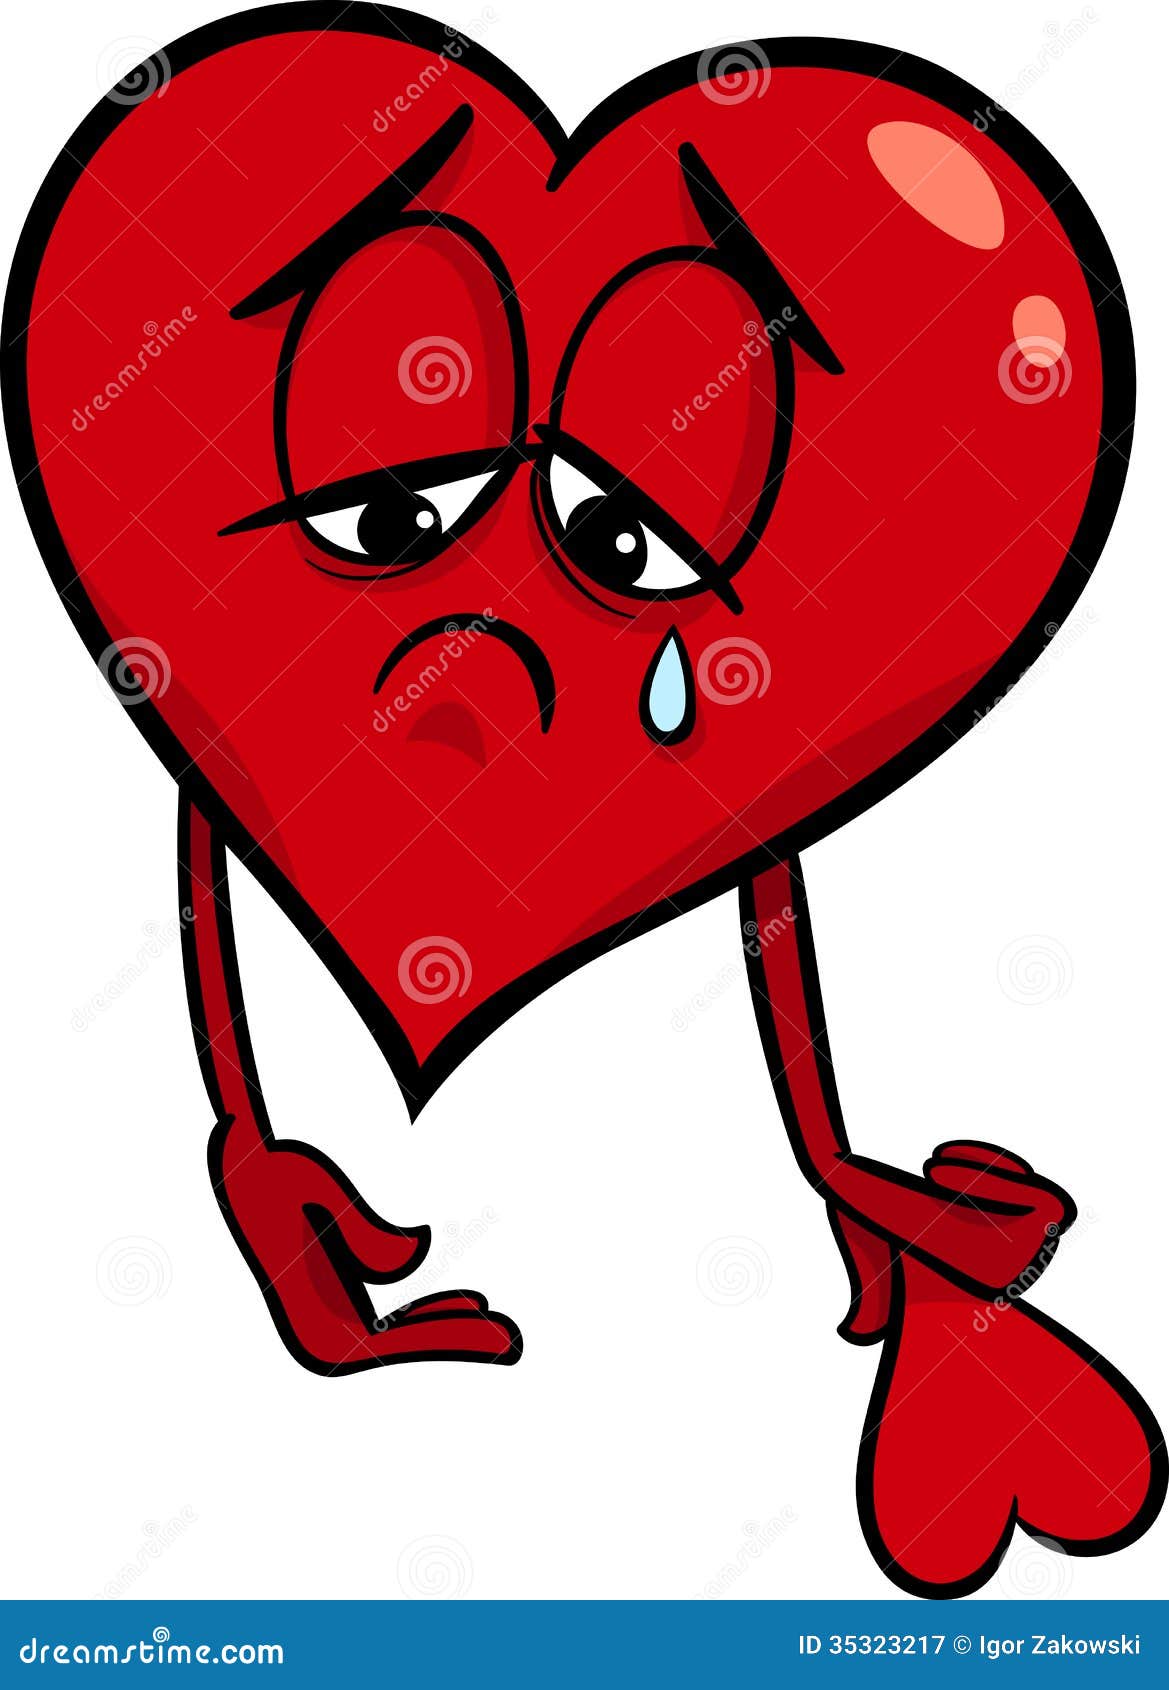 Broken Heart Cartoon Stock Illustrations – 3,989 Broken Heart Cartoon Stock  Illustrations, Vectors & Clipart - Dreamstime